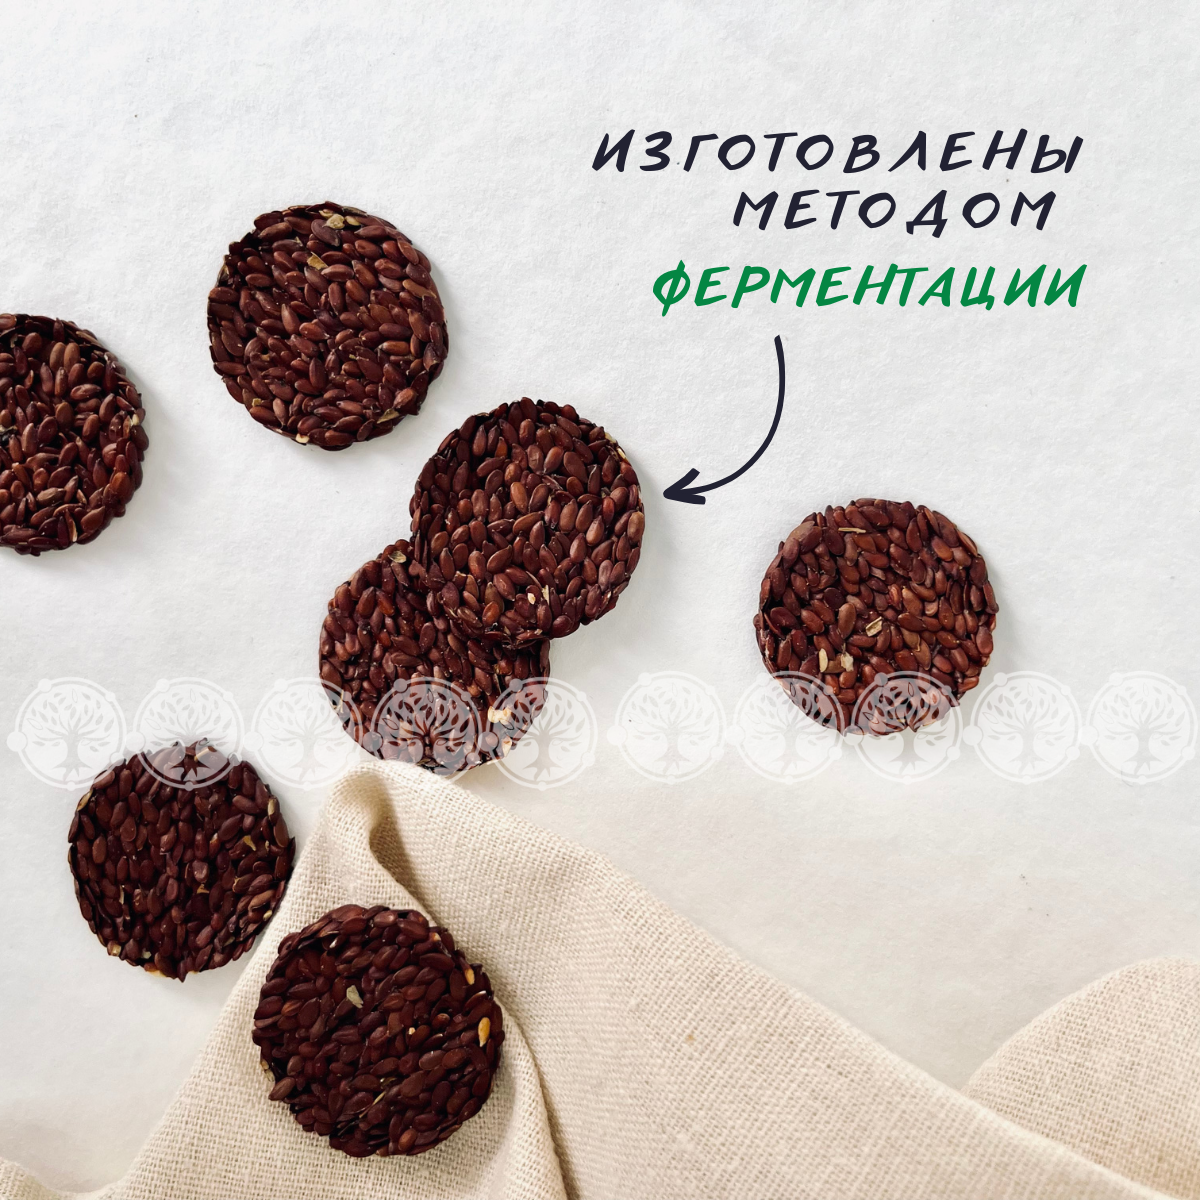 Снеки-хлебцы льняные NutVill "Томаты и прованские травы" без глютена и сахара с пребиотиком, 1 шт х 70г